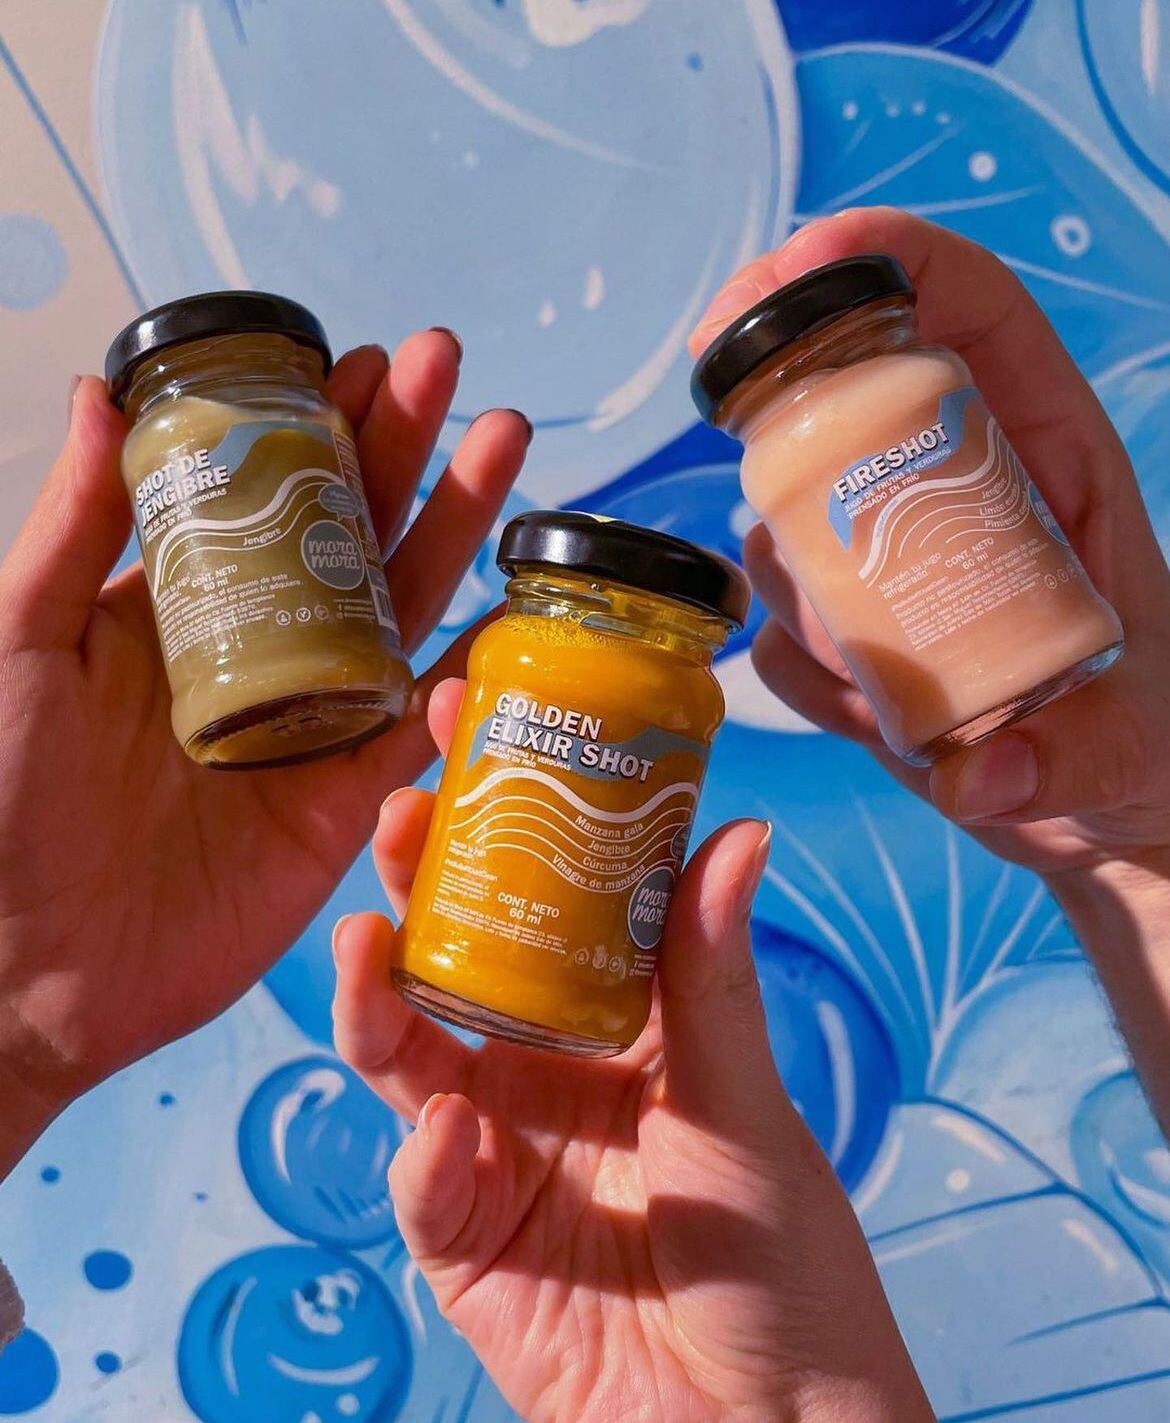 Mora Mora ofrece 'shots' de jengibre y otros ingredientes. (Foto: Instagram / @moramora_mx)